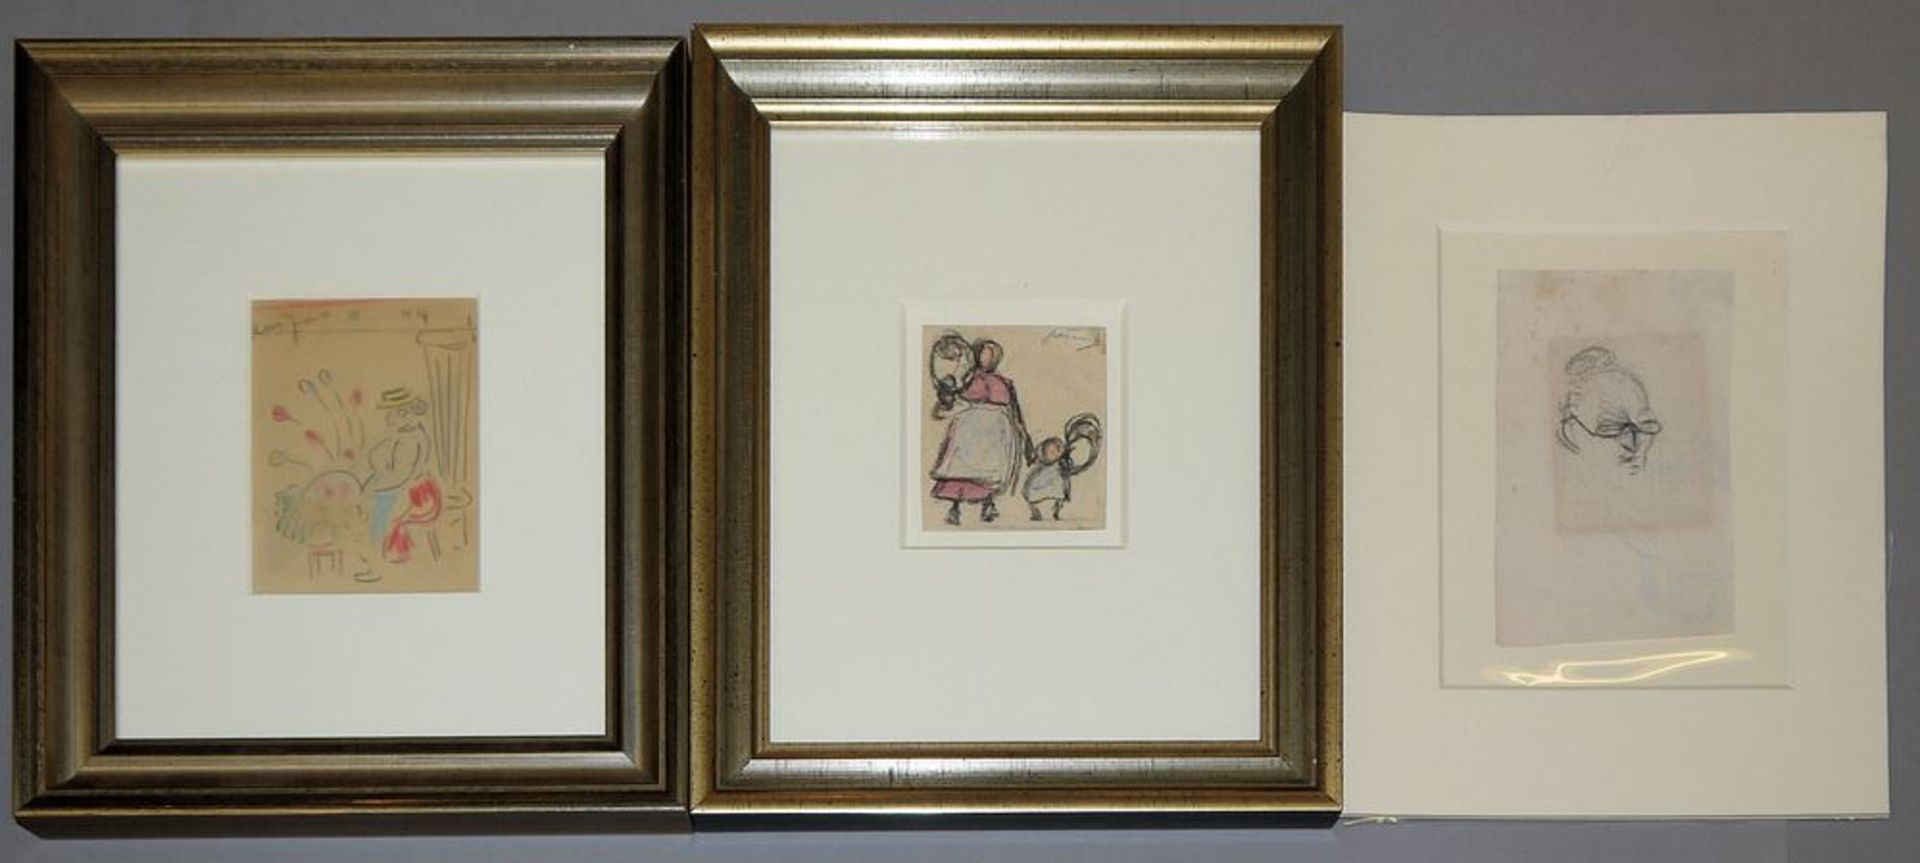 Heinrich Zille, 3 Zeichnungen (2 x mit Nachlass-Stempel), zweimal gerahmt